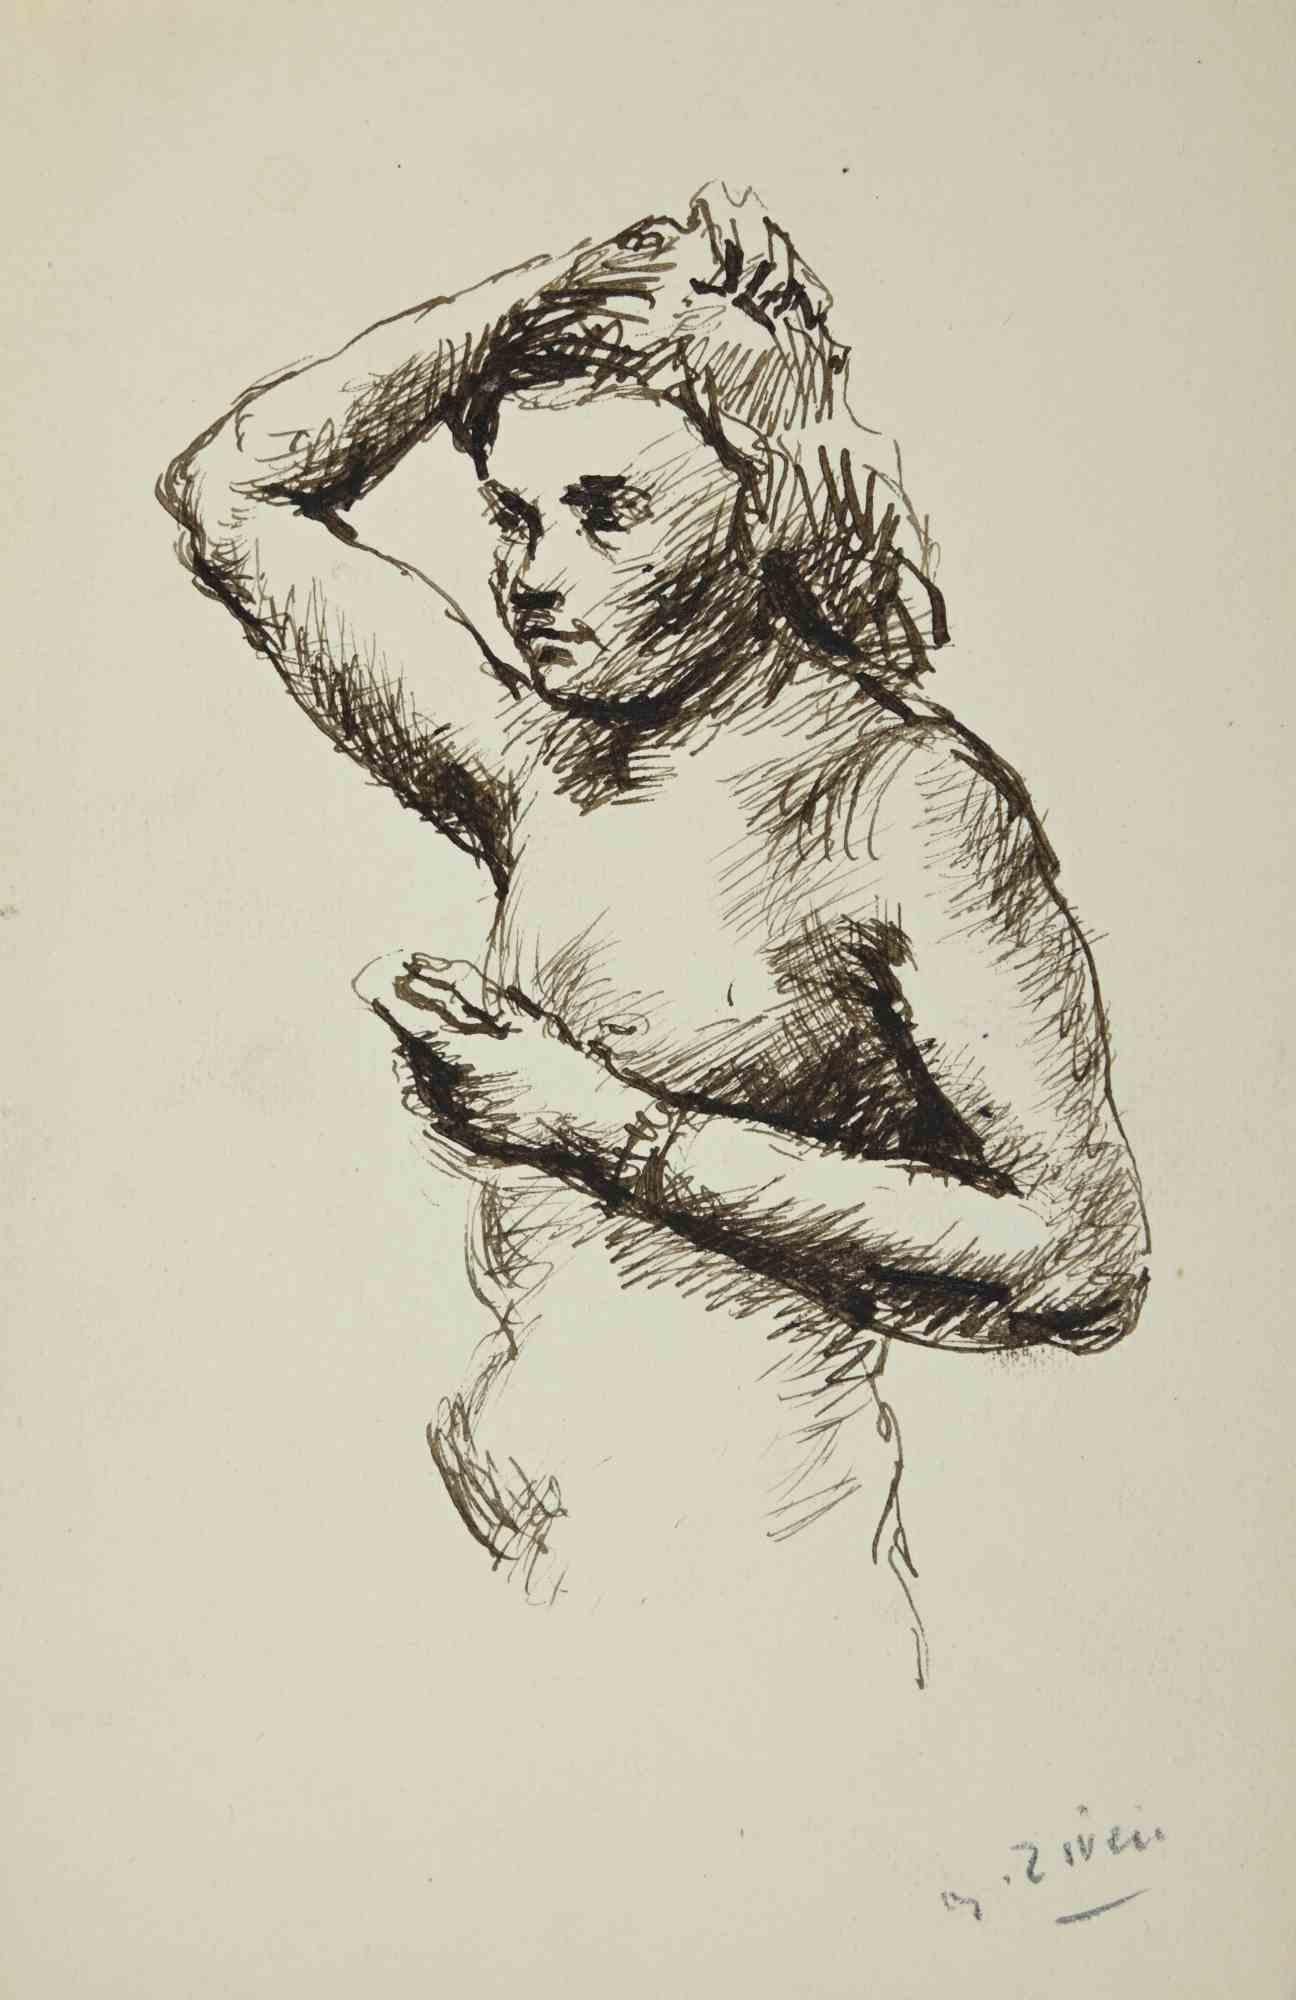 Der Akt ist eine Zeichnung von Alberto Ziveri aus den 1930er Jahren.

Tinte auf Papier

Handsigniert.

In gutem Zustand. 

Das Kunstwerk wird durch geschickte Striche meisterhaft dargestellt.

Alberto Ziveri (Rom, 1908 - 1990), der italienische